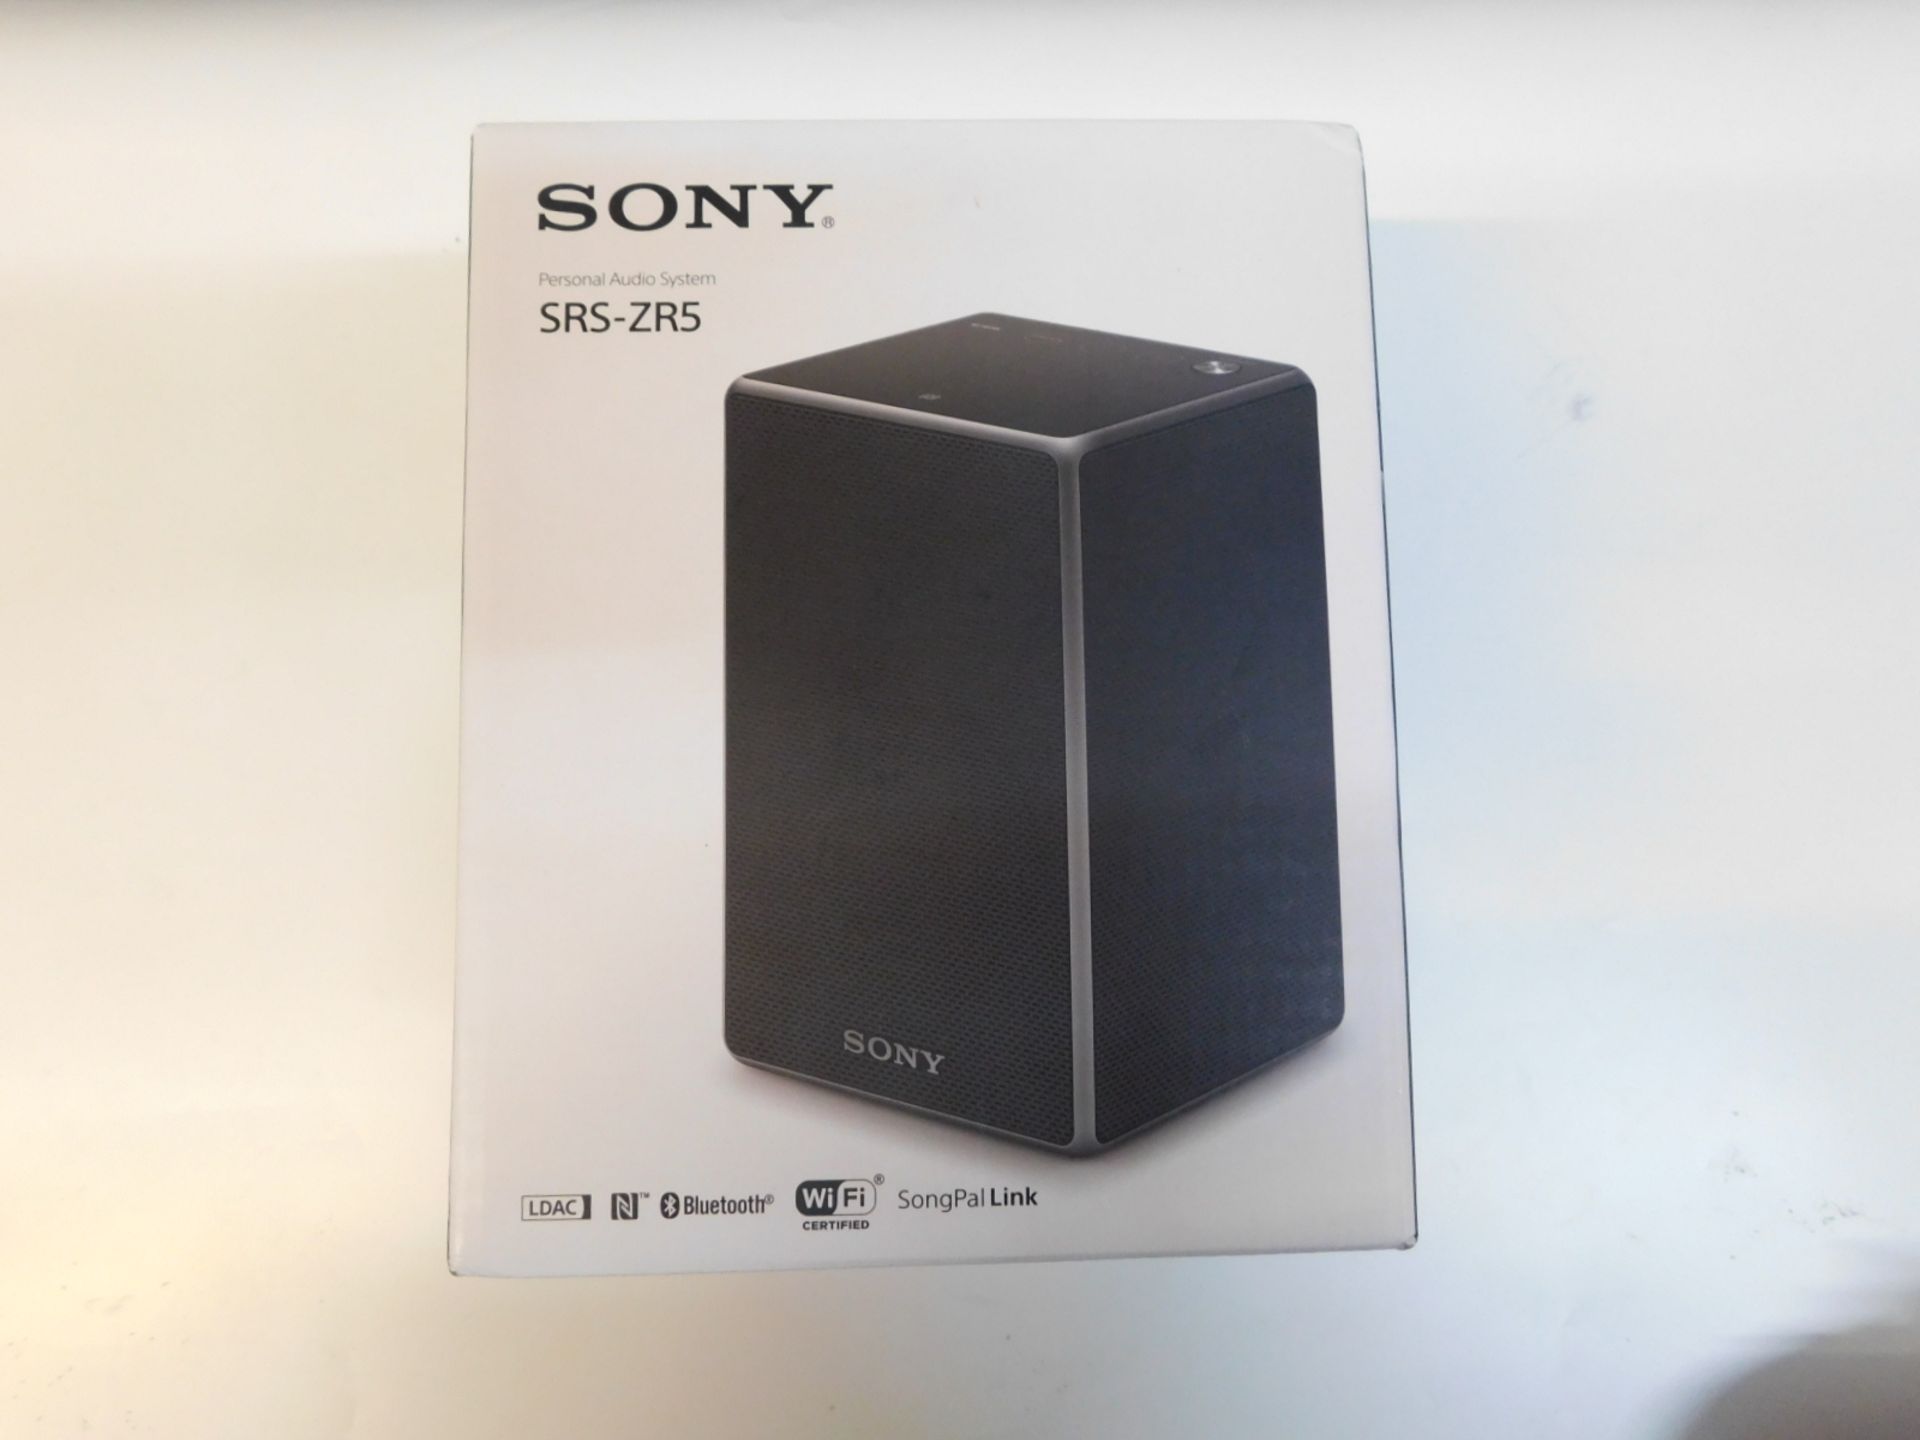 1 BOXED SONY SRS-ZR5 WIRELESS SMART SOUND MULTI-ROOM SPEAKER RRP Â£129.99